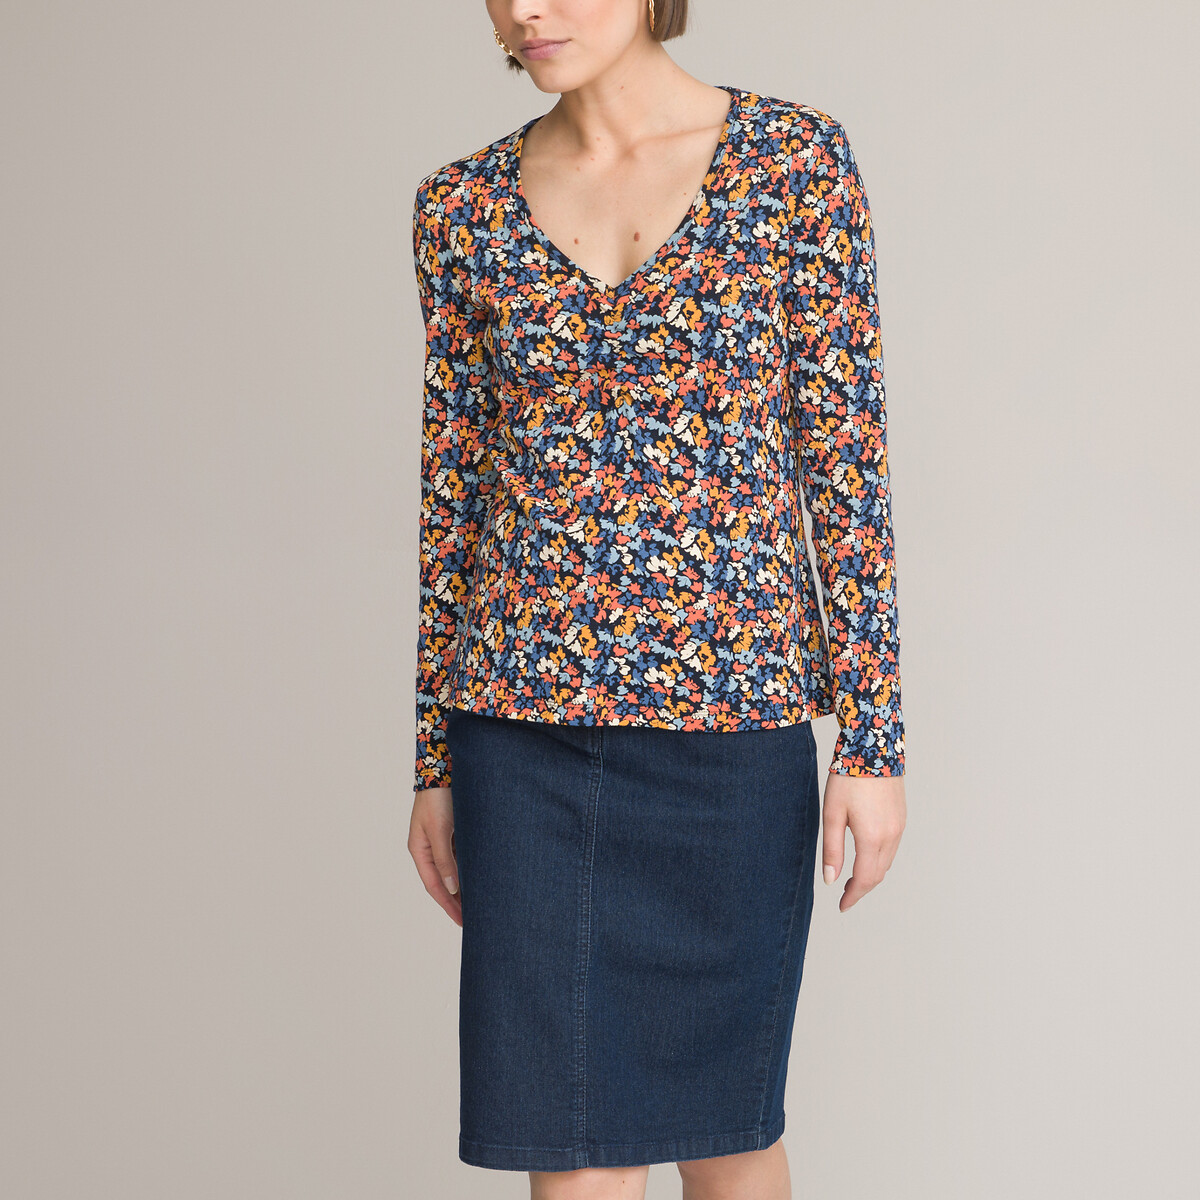 Блузка с круглым вырезом короткими рукавами и цветочным принтом  38/40 (FR) - 44/46 (RUS) черный